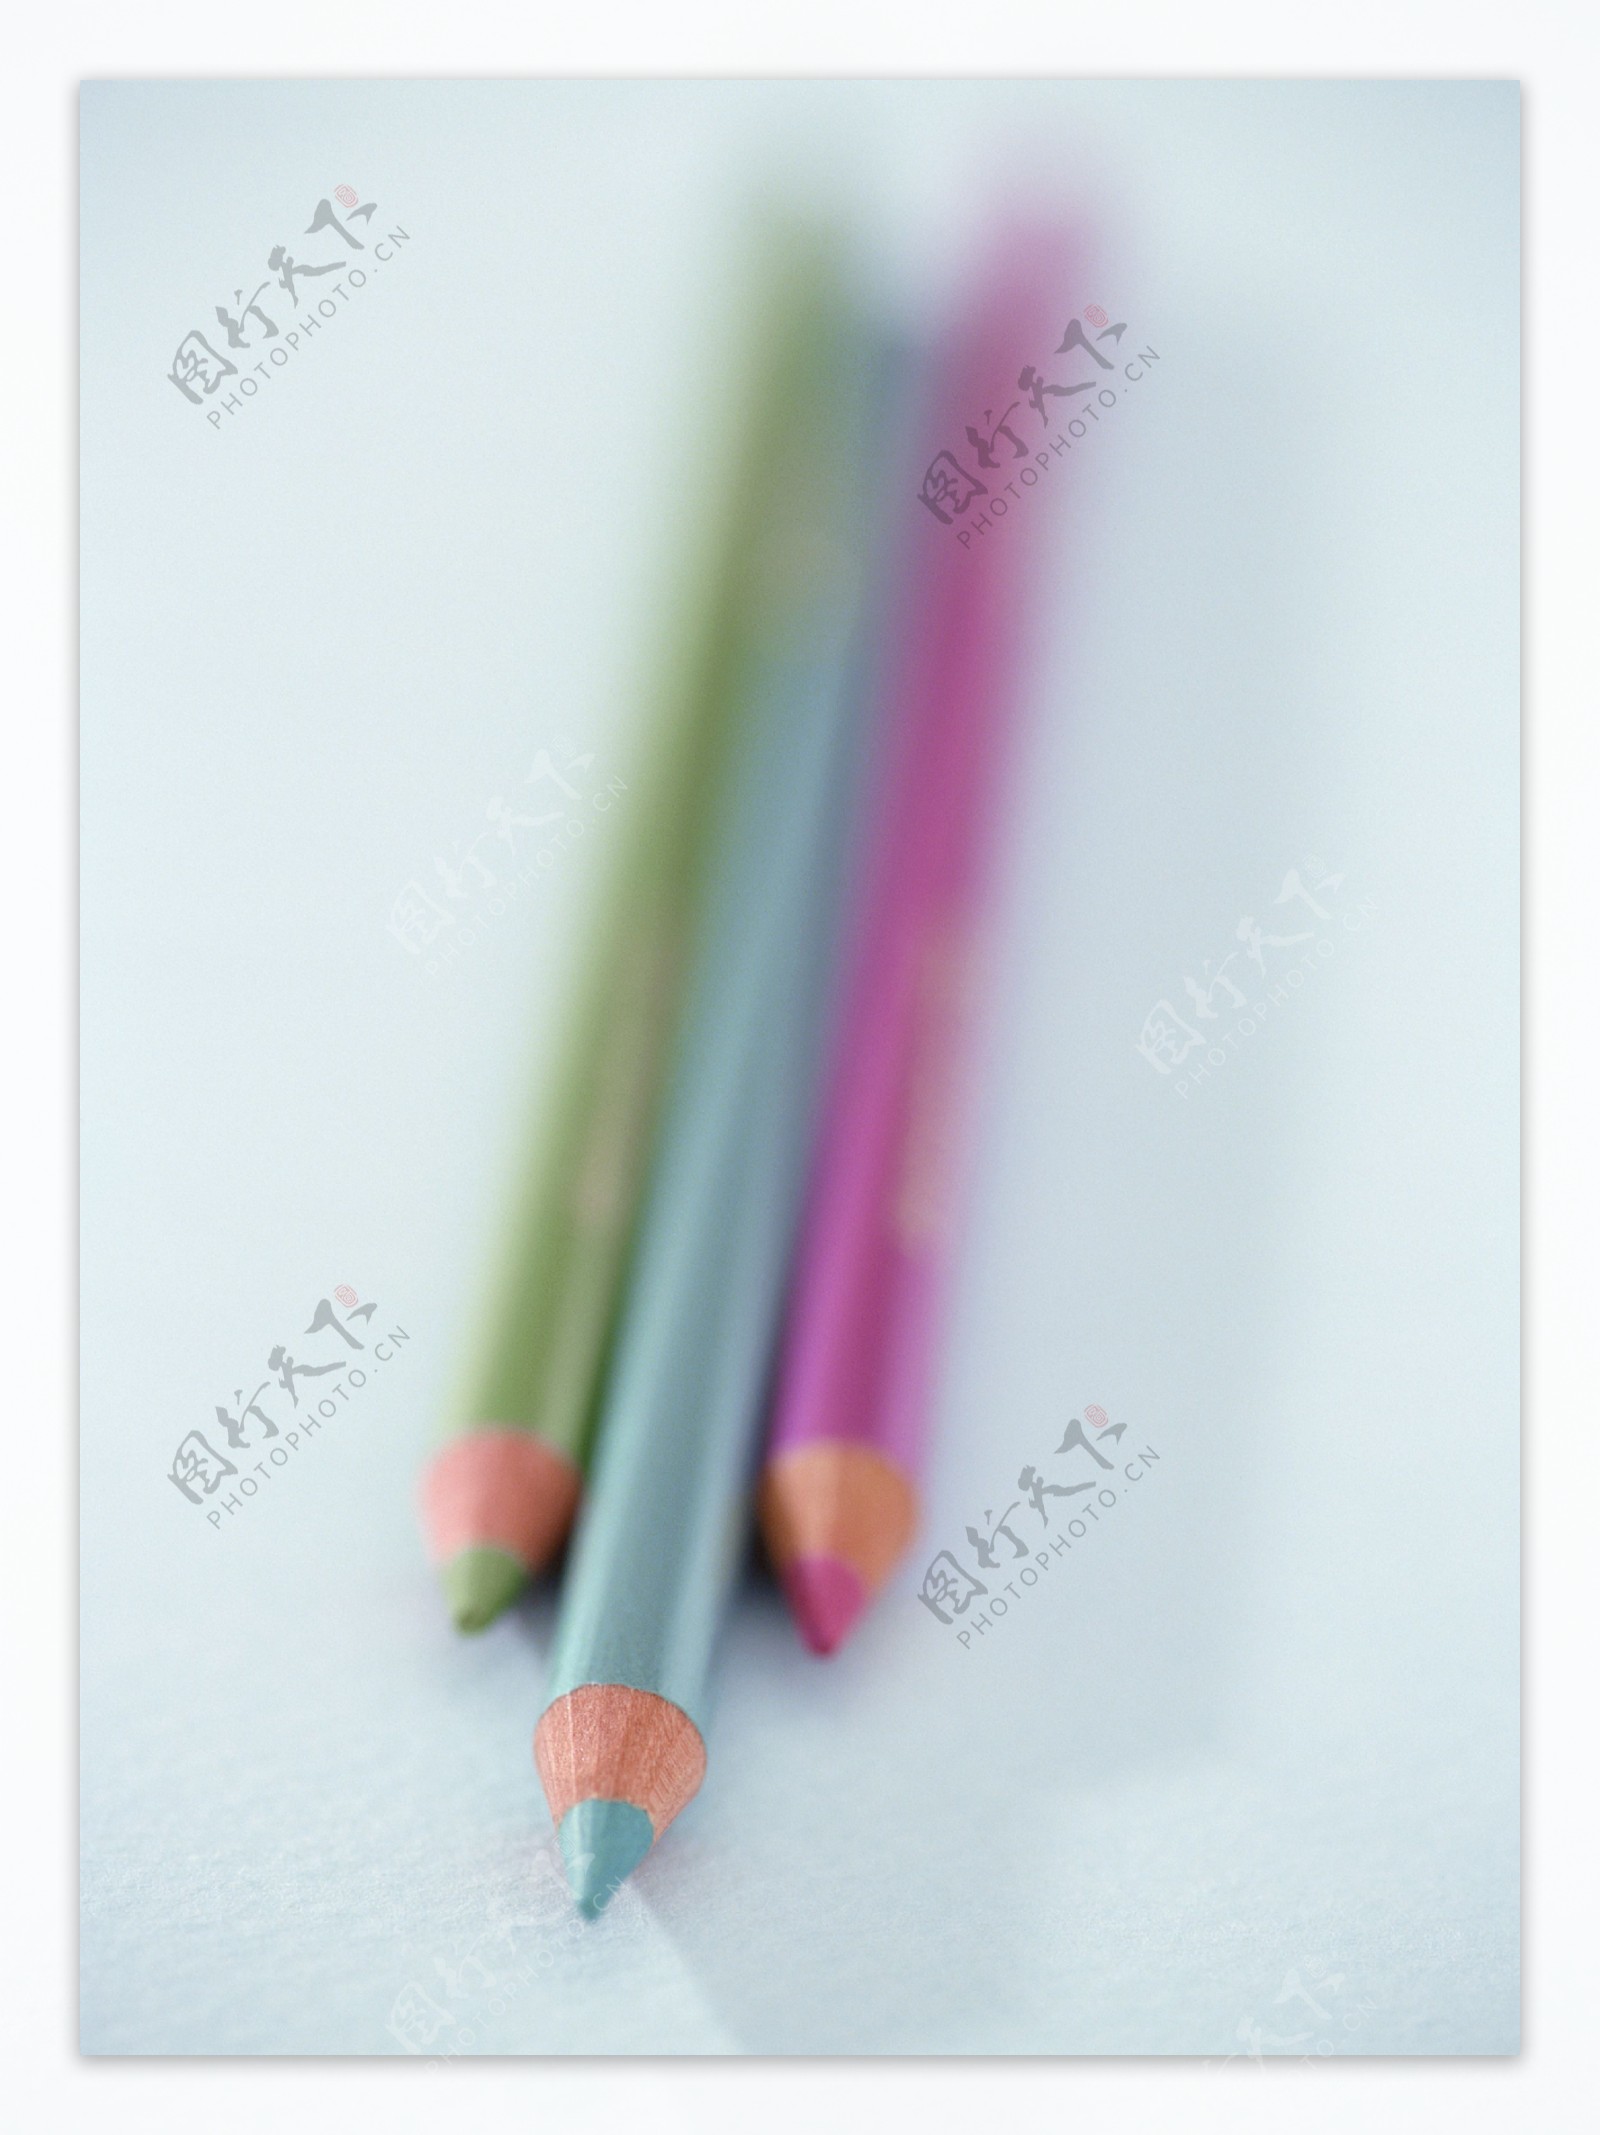 静物物品创意组合造型彩色铅笔